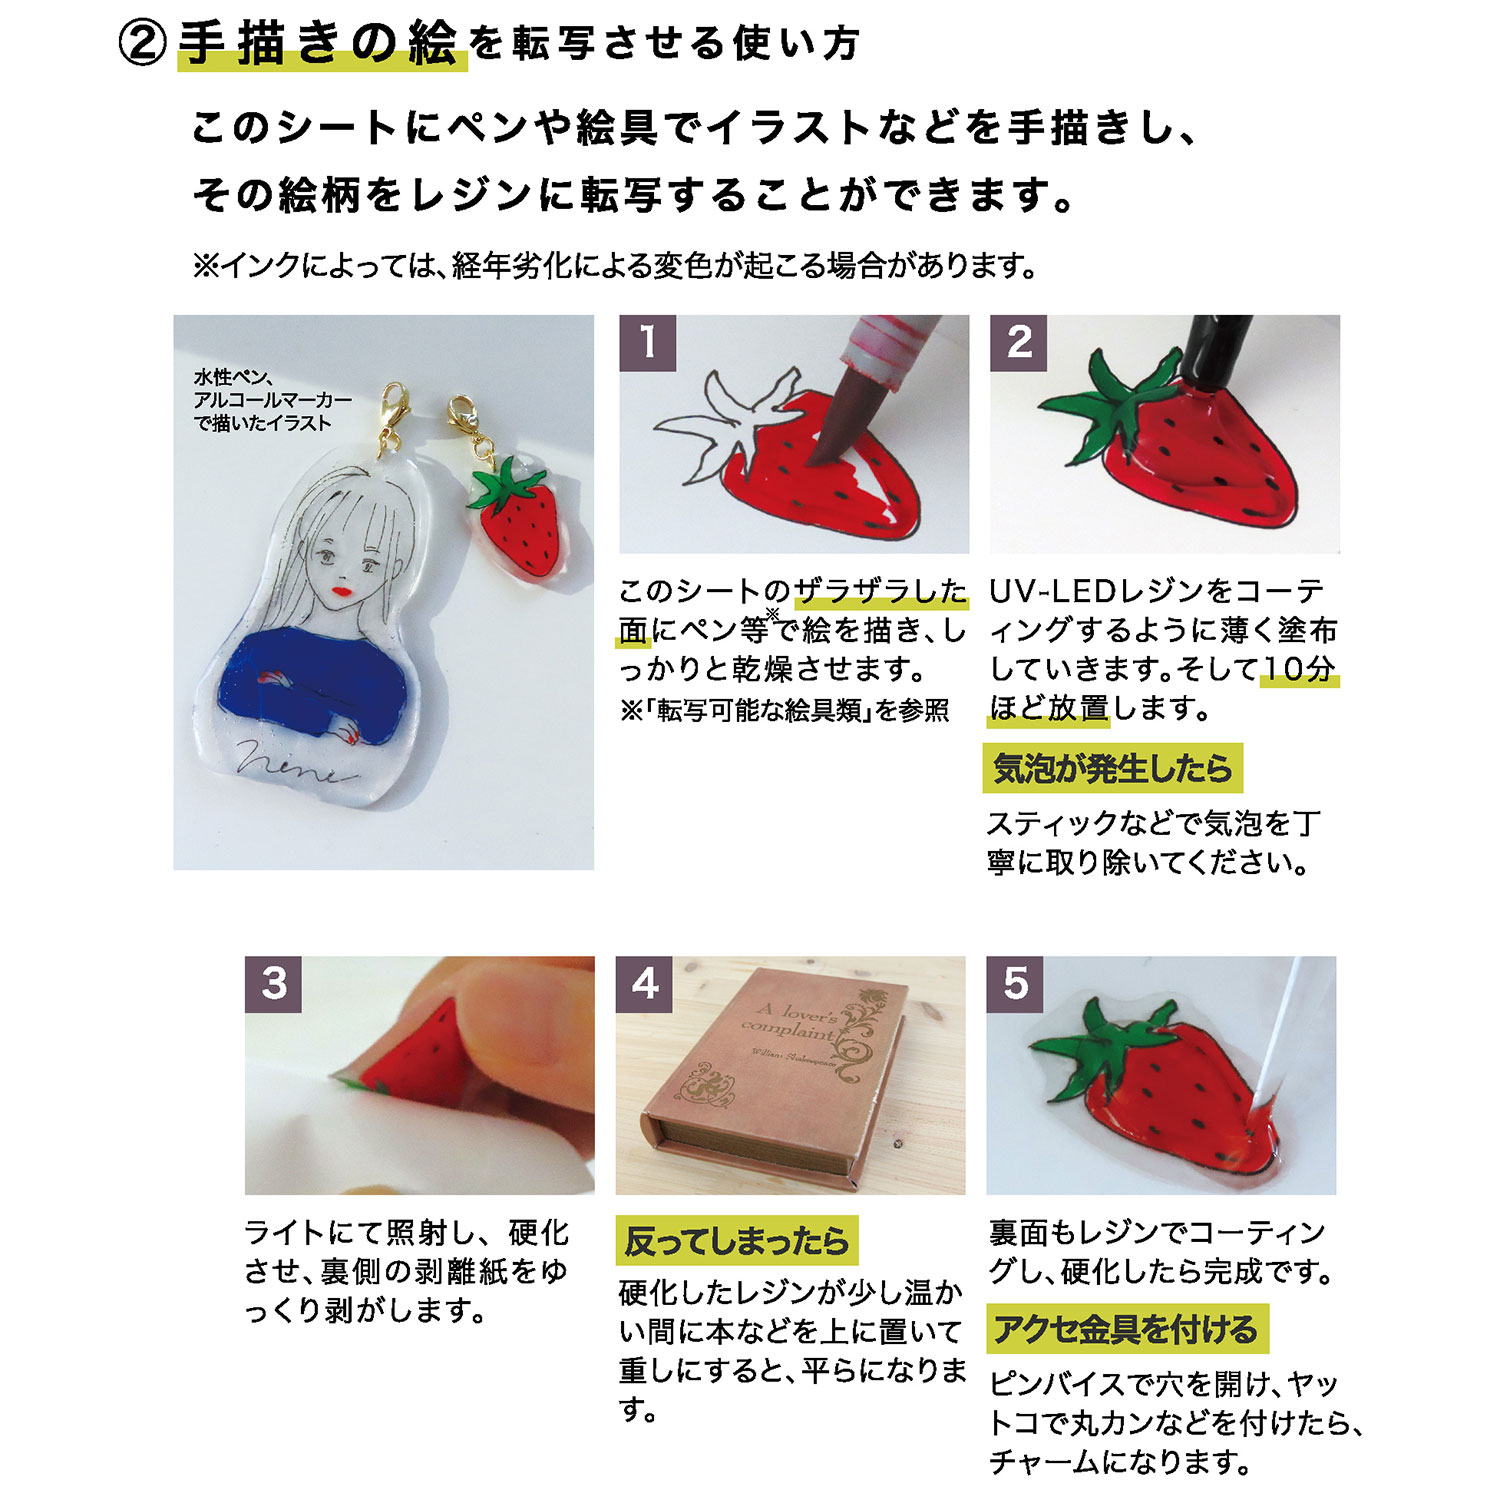 Pdc パジコ レジン専用 転写プリンタシート 袋 手芸材料の卸売りサイトchuko Online